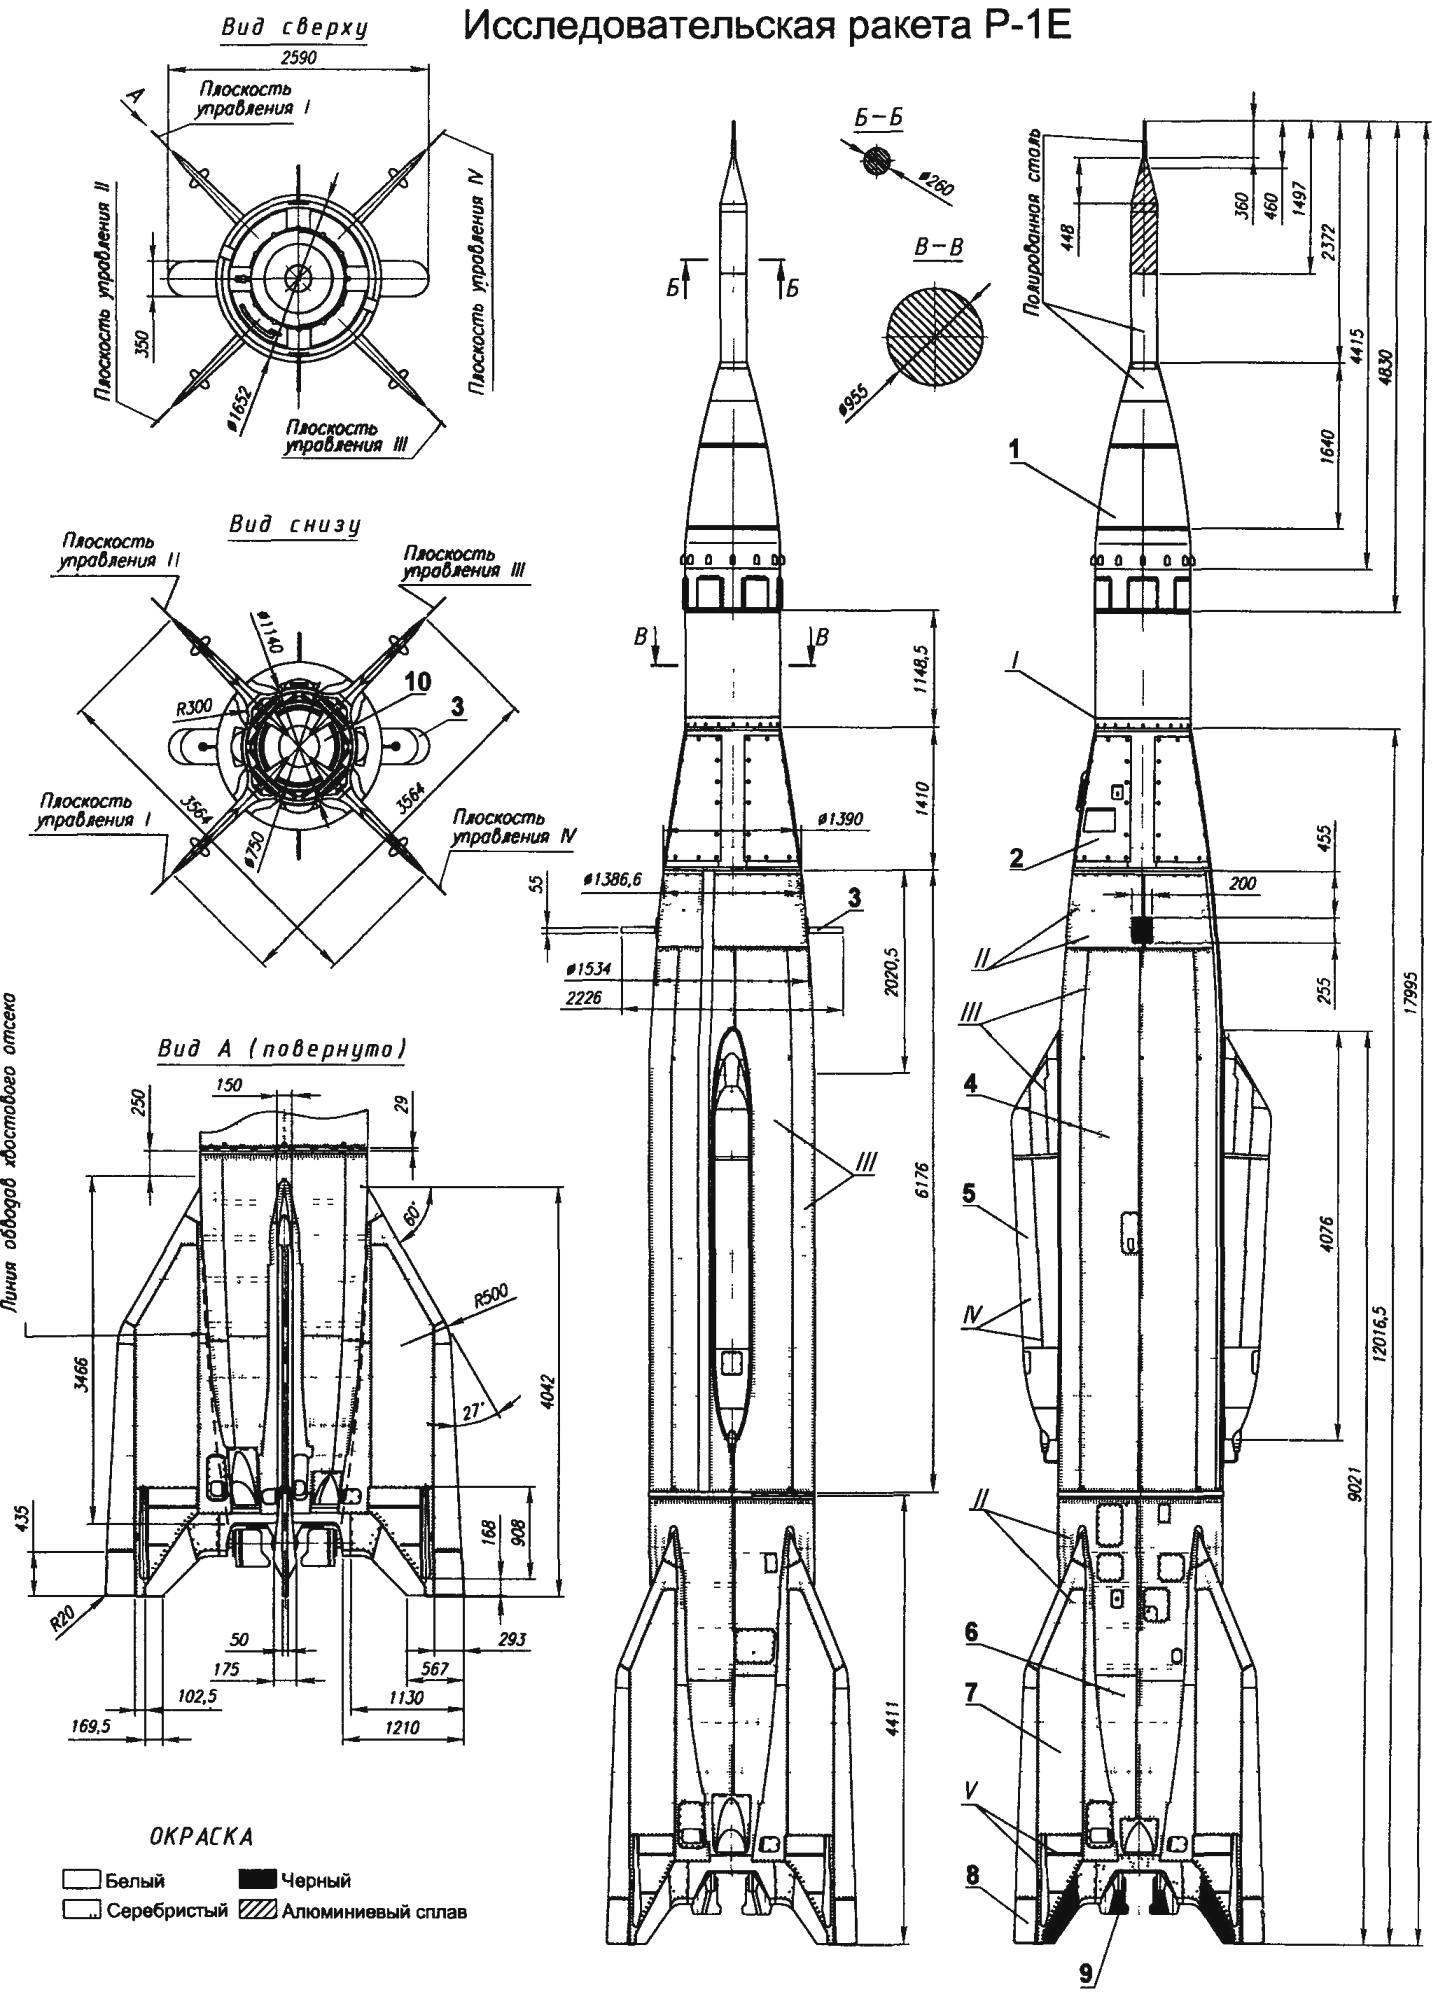 Исследовательская ракета Р-1 Е